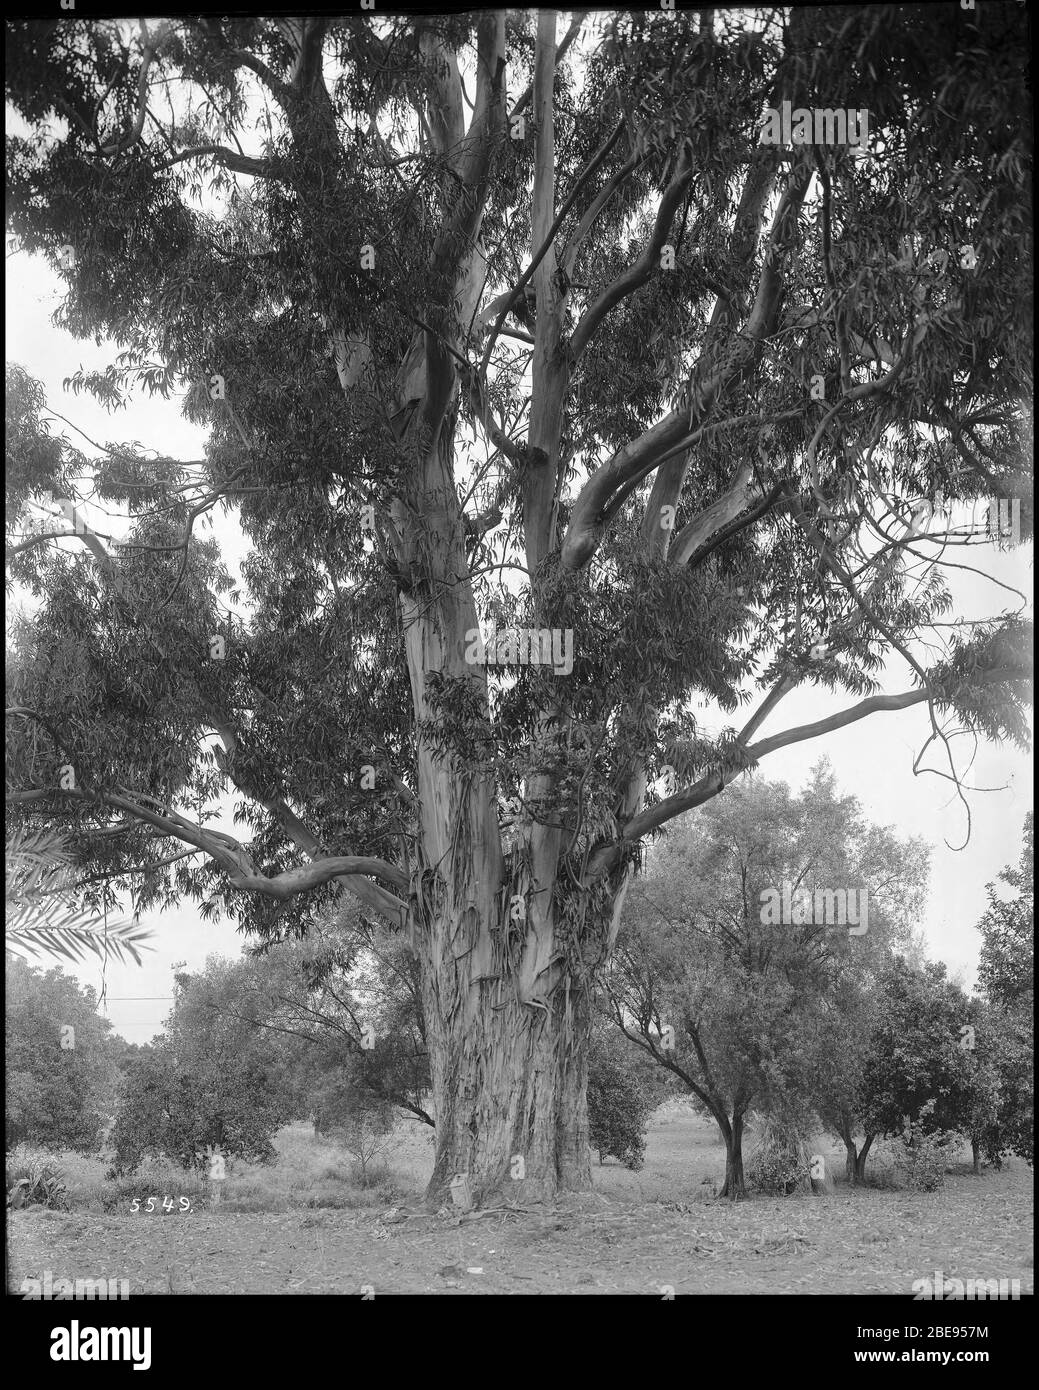 'Inglés: Un eucalipto de veinticinco años de edad en un bosque de eucaliptos en el L.J. Rose Ranch, CA.1900 Fotografía de un eucalipto de veinticinco años de edad en un bosque de eucaliptos en el L.J. Rose Ranch, CA.1900. Las ladridos en el tronco se están despegando para revelar la superficie lisa debajo. El suelo está salpicado de hojas caídas. Arbustos y hierba cubren el área en el fondo donde se encuentran otros árboles.; bajo la propiedad de Leonard John Rose, el lugar en vivo de Sunny Slope Ranch era un lugar de exhibición de huertos y viñedos, dibujando hasta dos o trescientos visitantes al día. Rose aprendió Foto de stock